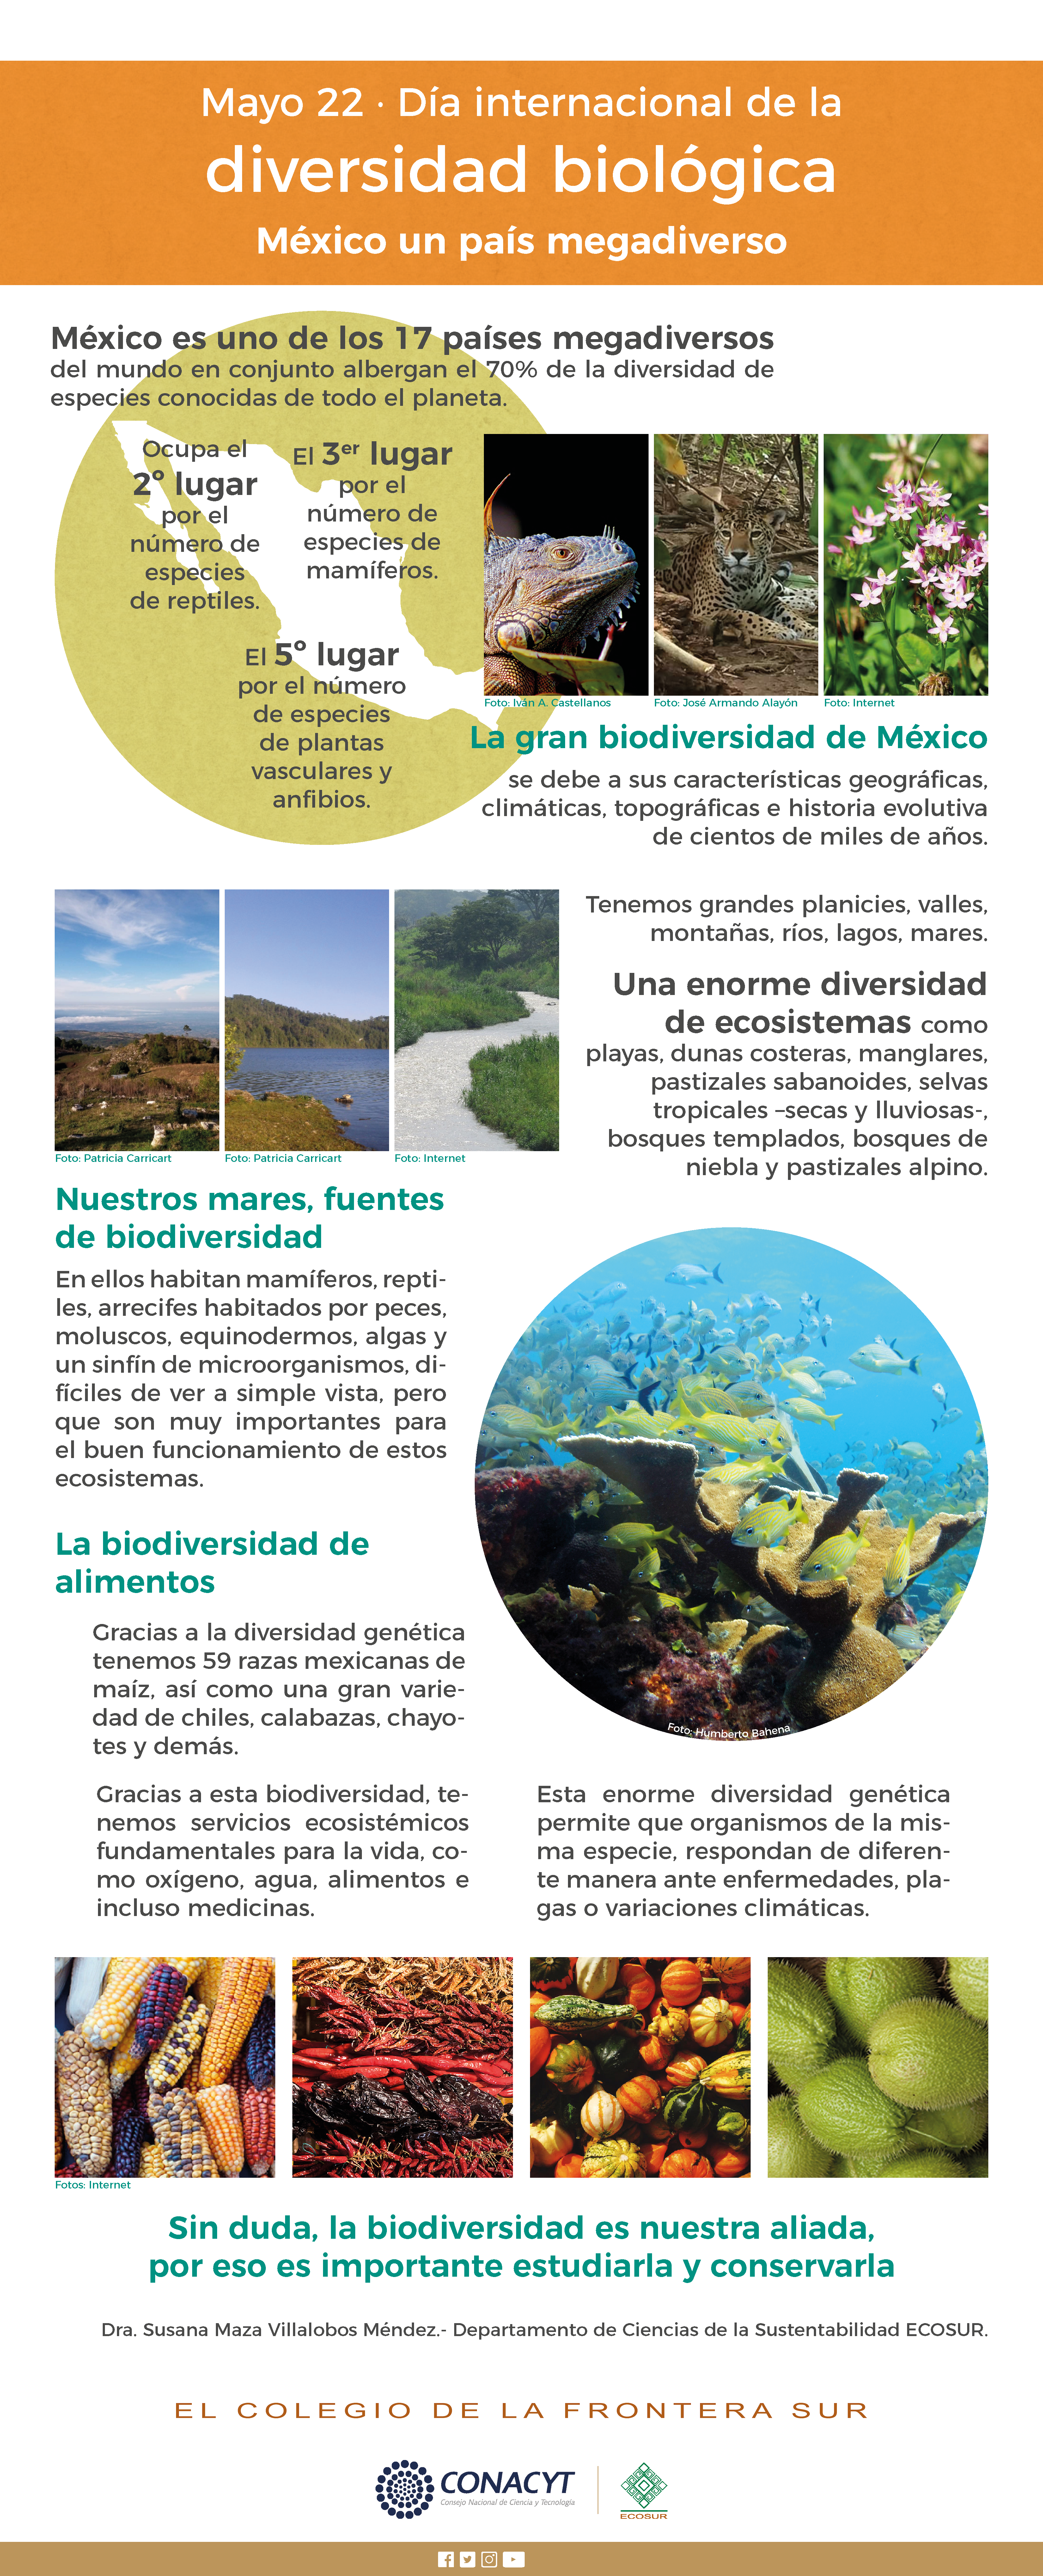 Mayo 22 día internacional de la diversidad biológica, México un país megadiverso